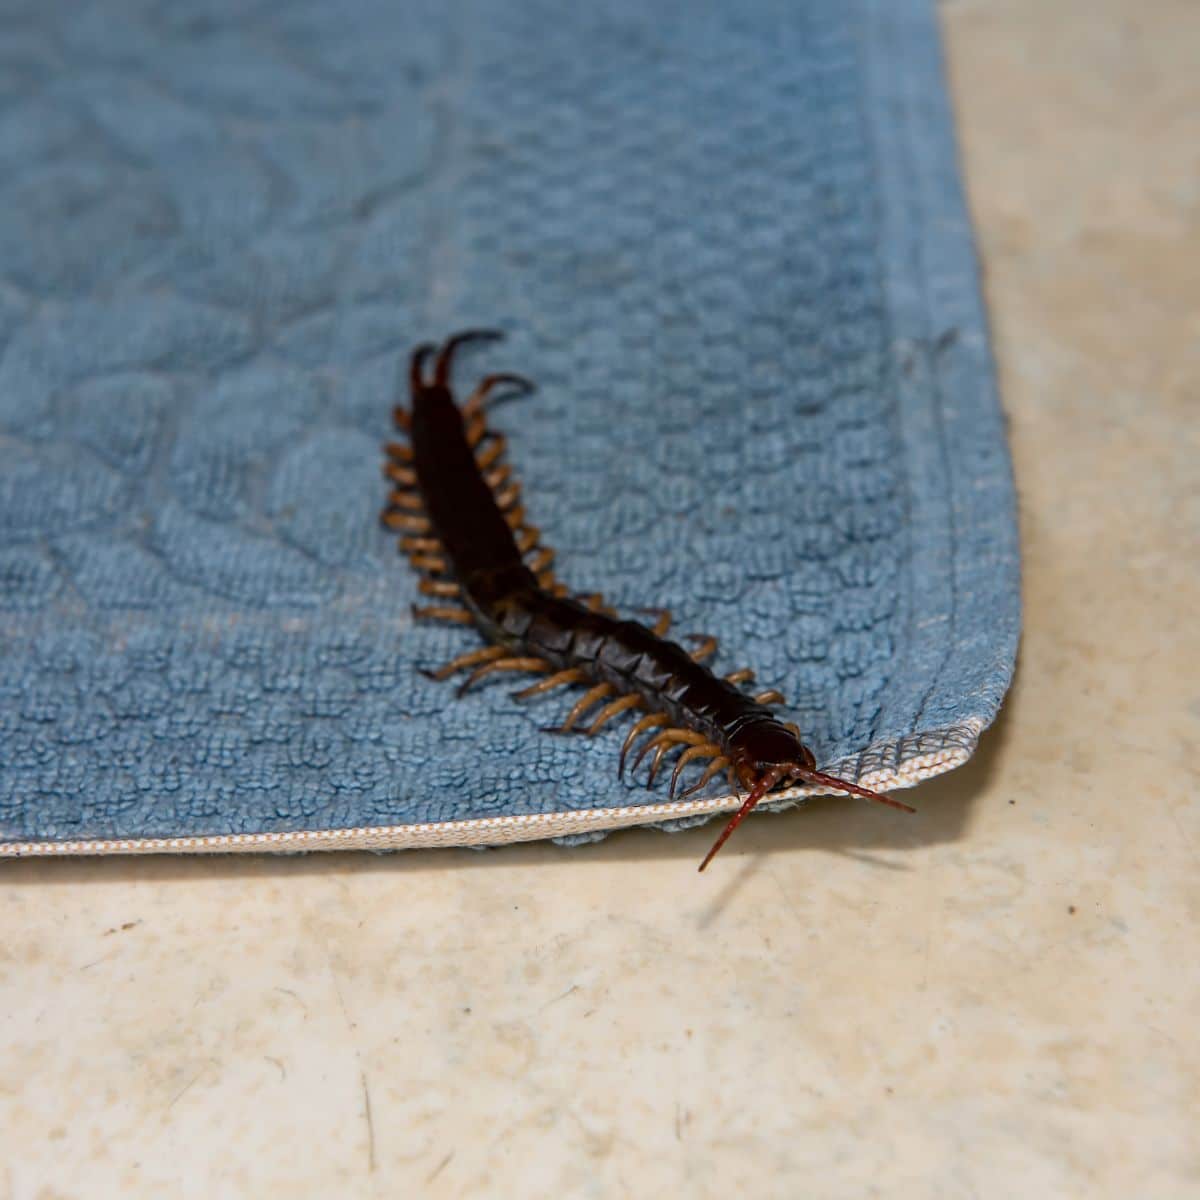 what do centipedes mean spiritually